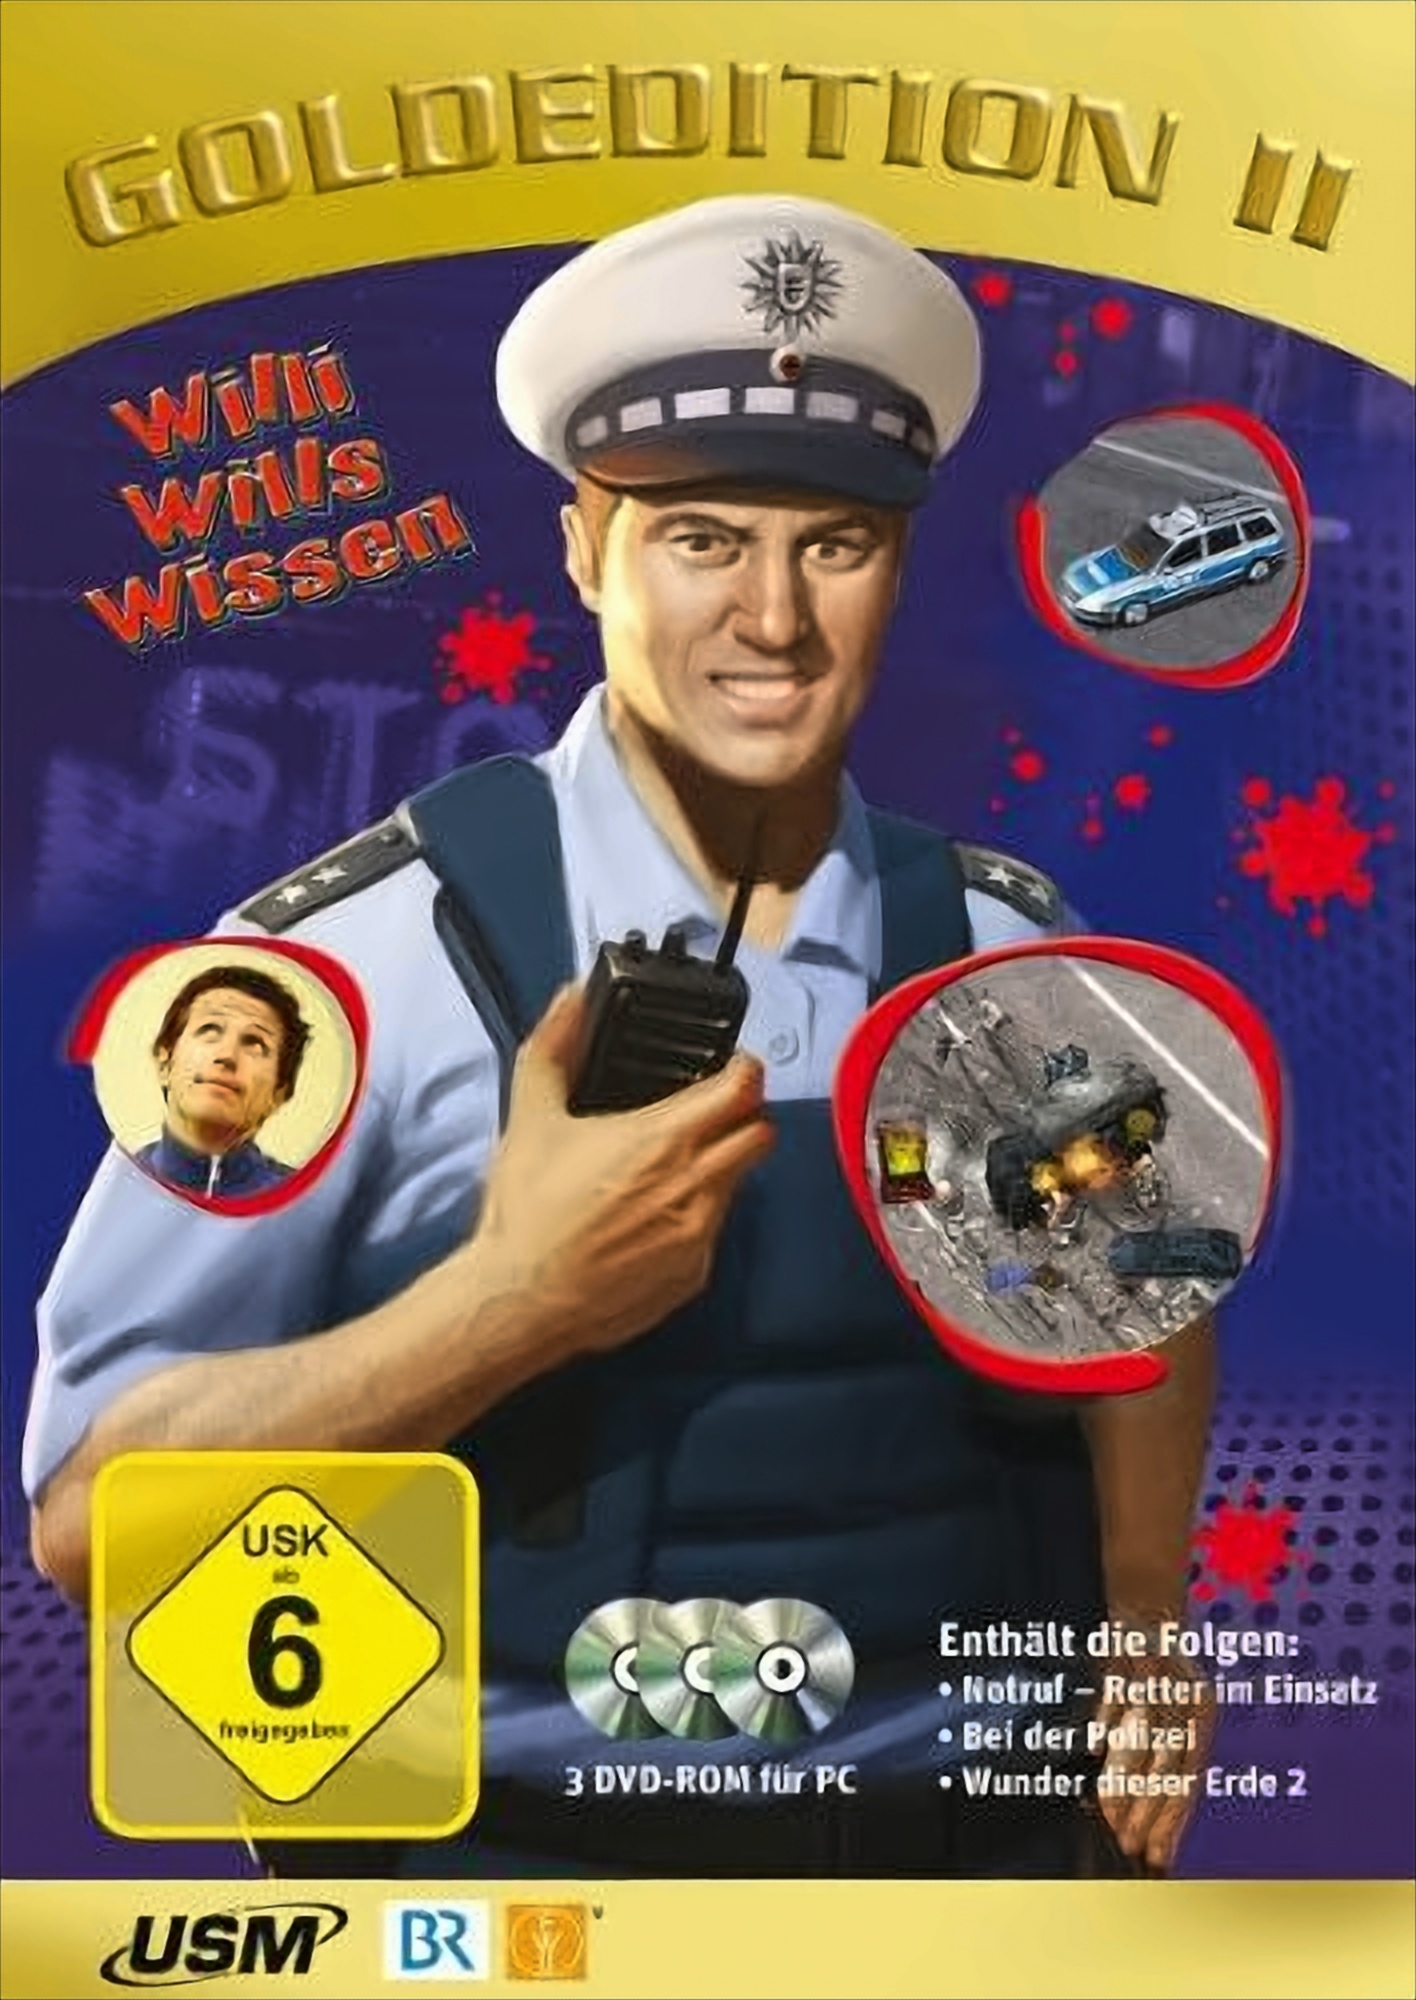 [PC] wissen DVD-ROMs) (3 wills - Goldedition Willi - 2